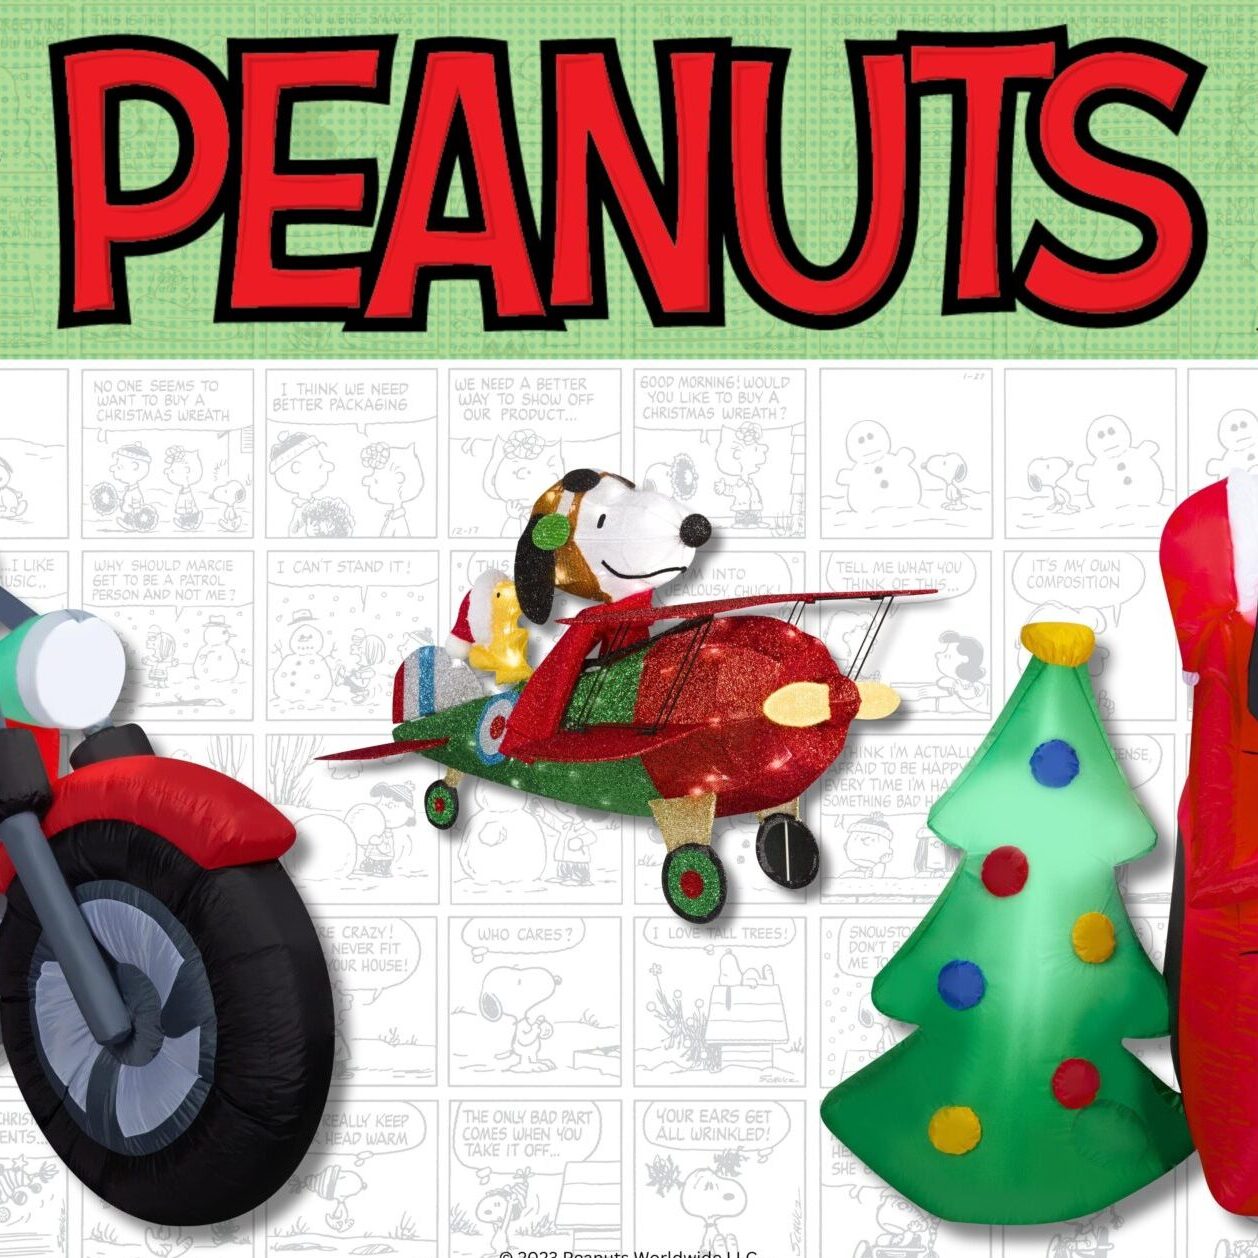 Vamos a dejar regalos a cualquier lugar no somos clasistas!  Snoopy  christmas images, Snoopy christmas, Snoopy and woodstock